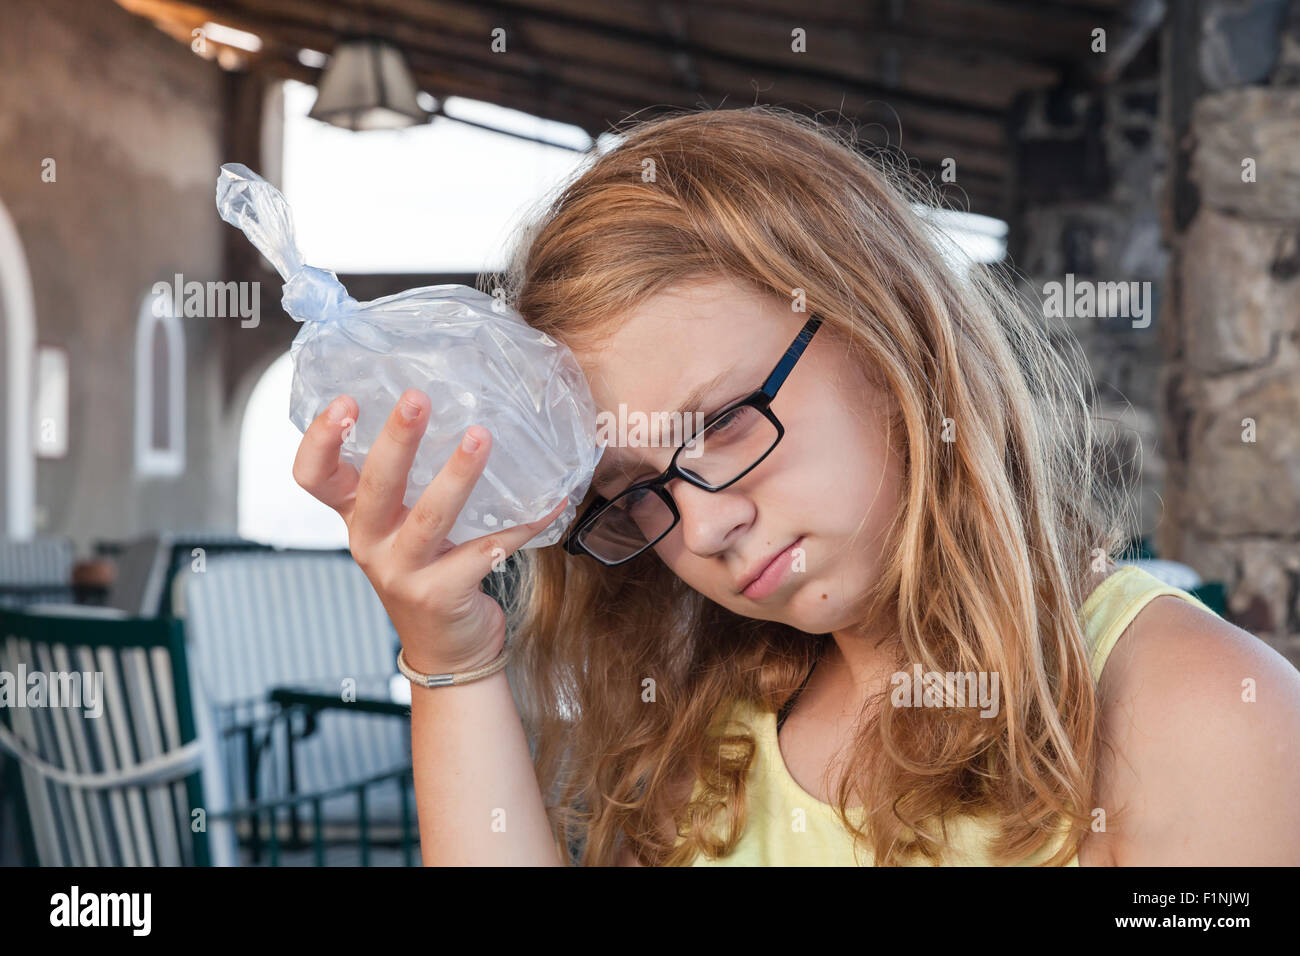 Blonden Mädchens kaukasischen stellt Eis in einem Plastikbeutel auf den Kopf Stockfoto